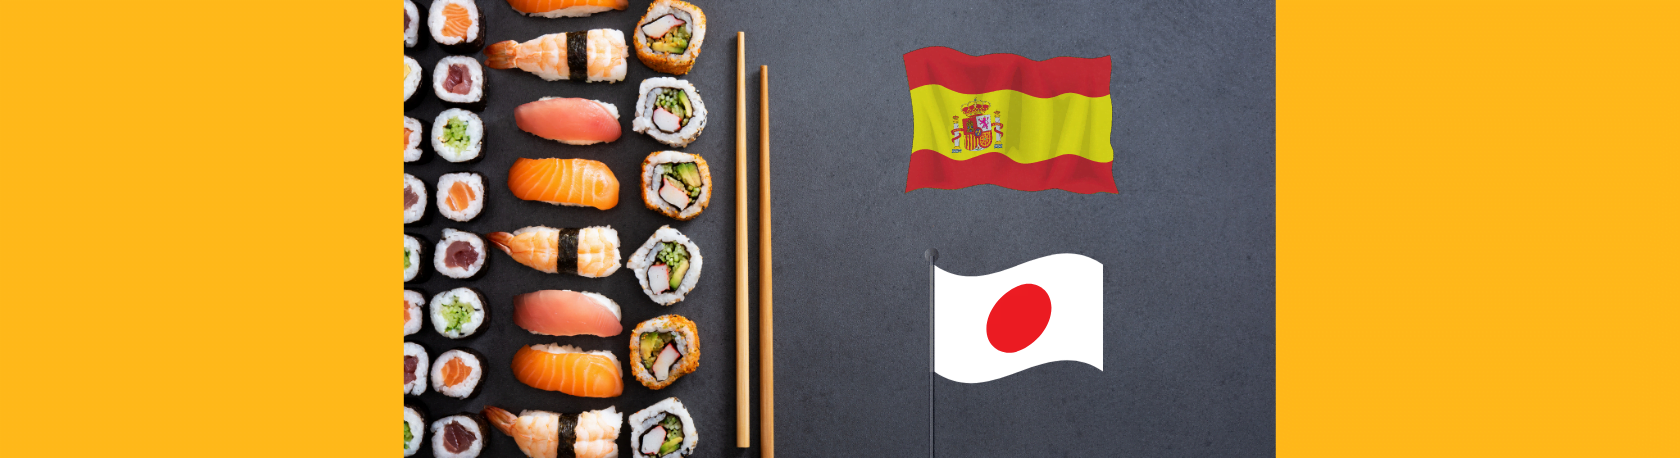 ¿Sabías que hay muchas palabras de origen japonés que ya son parte del vocabulario español? - Easy Español